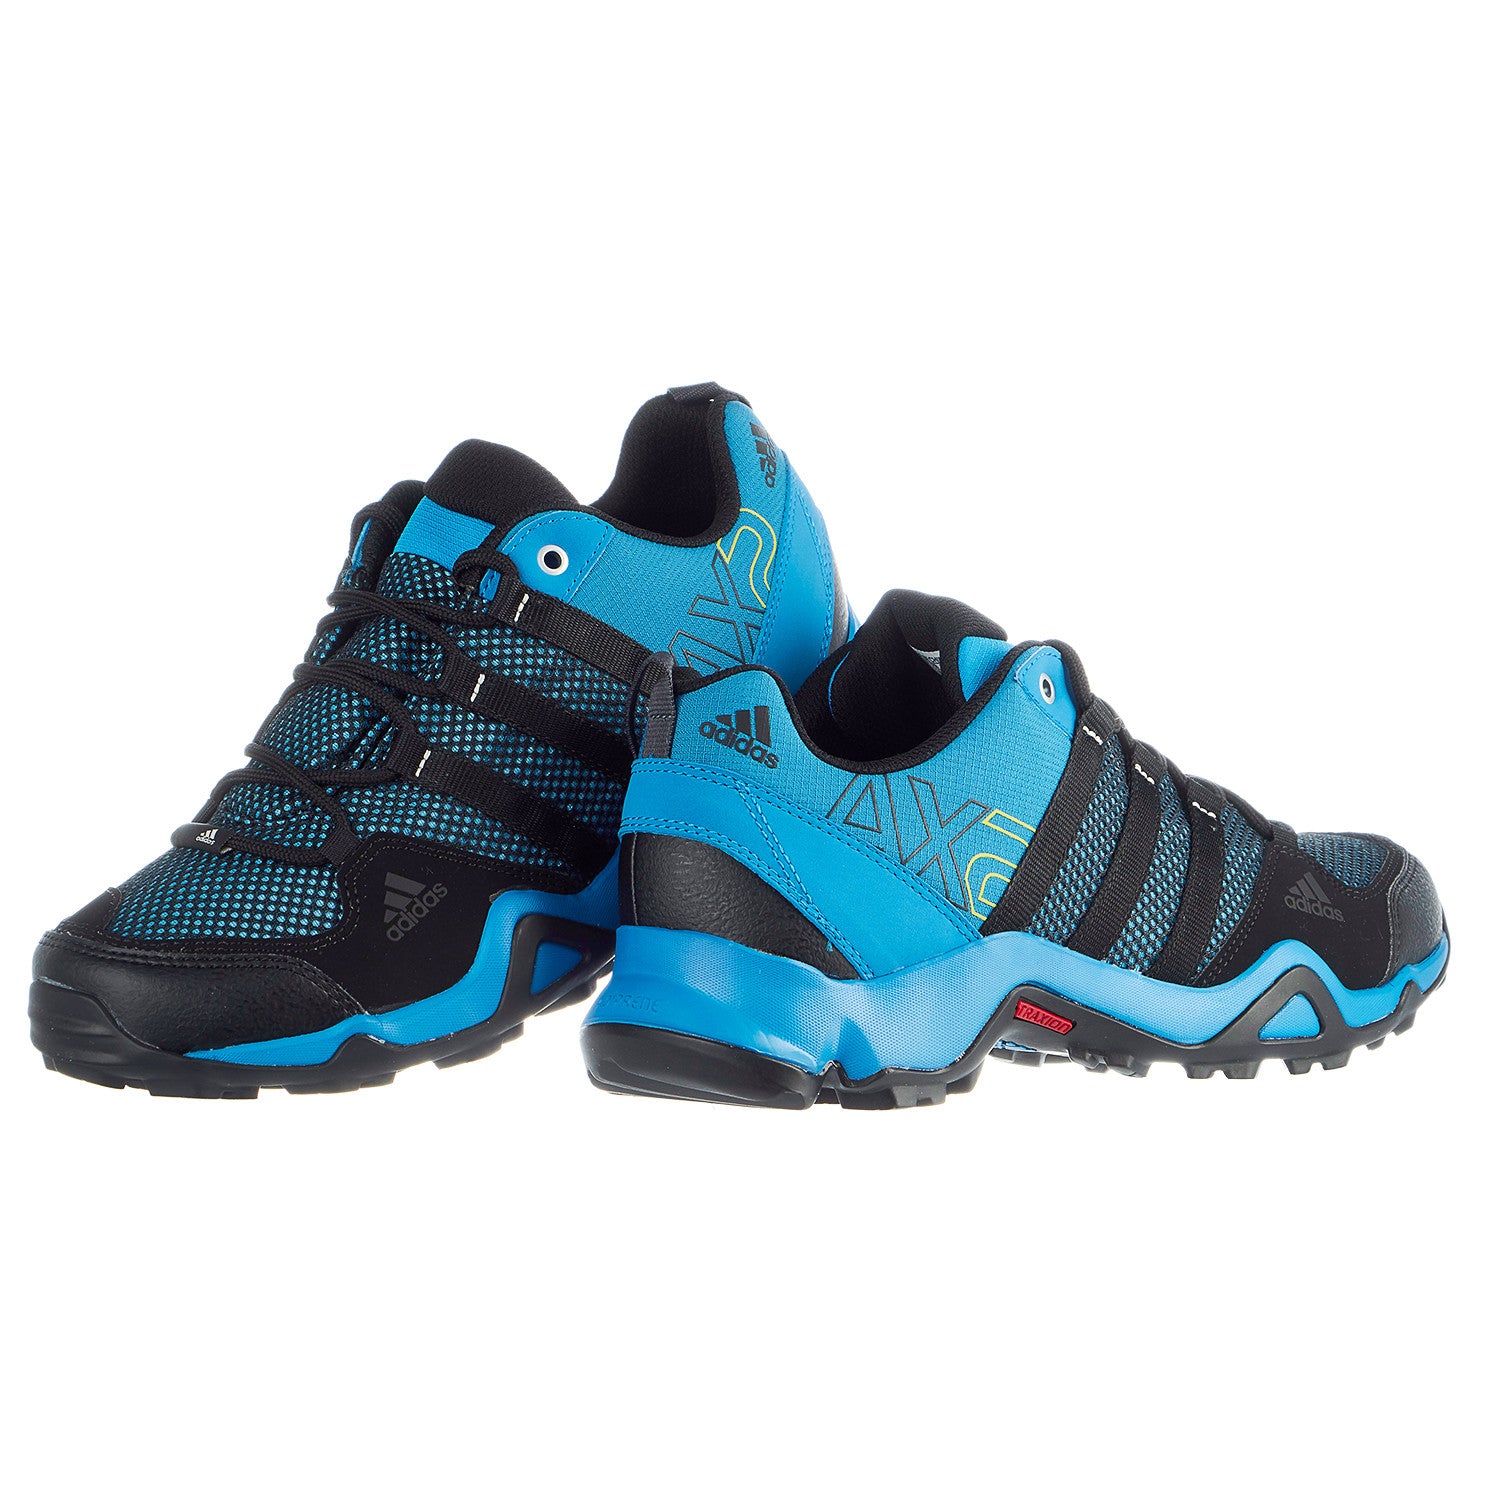 adidas outdoor terrex ax3 hiking shoe men's